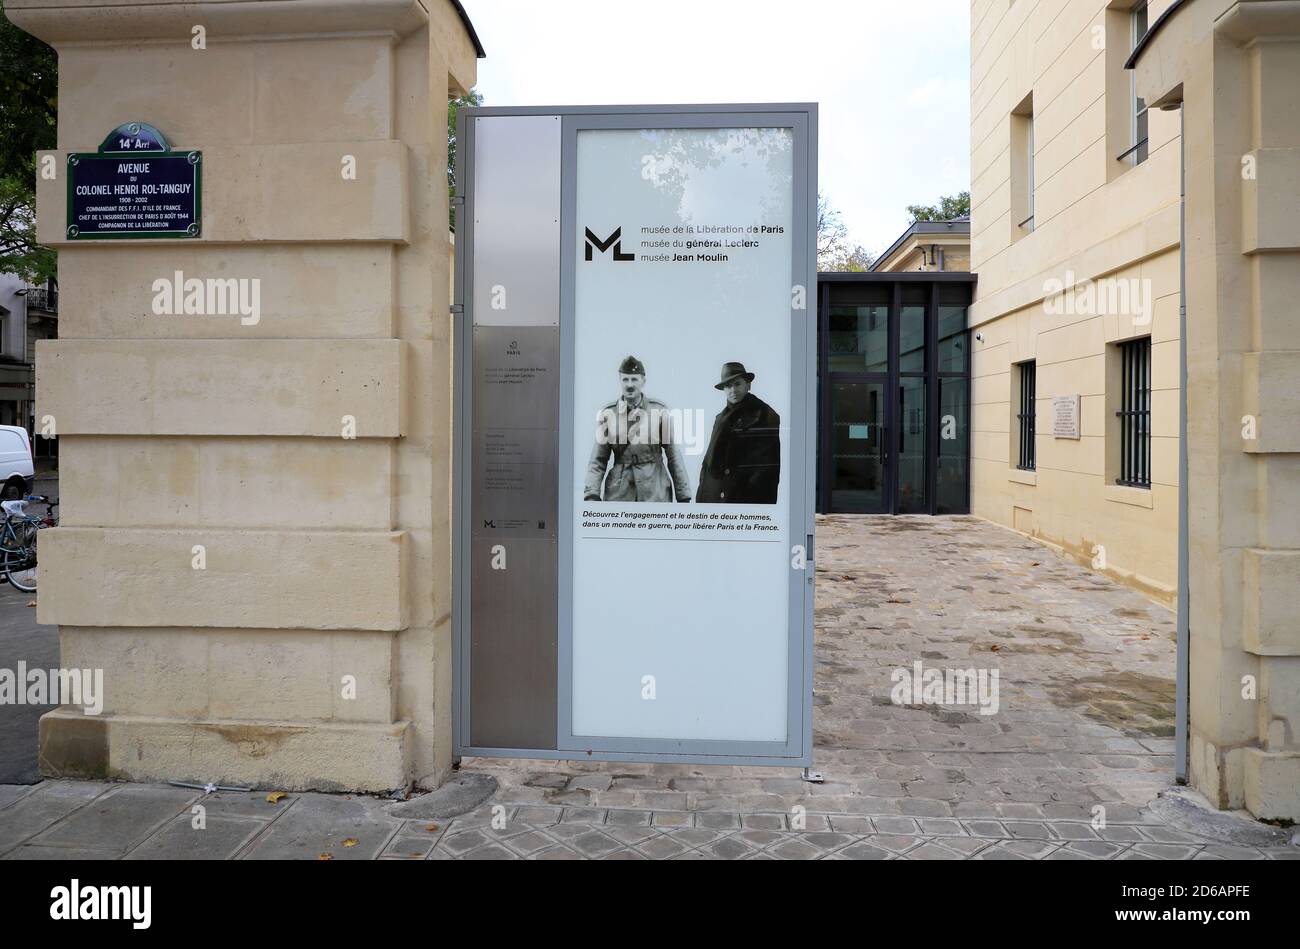 Vue extérieure du Musée de la libération de Paris - Musée du général Leclerc - Musée Jean Moulin. Musée de la libération de Paris.Paris.France Banque D'Images